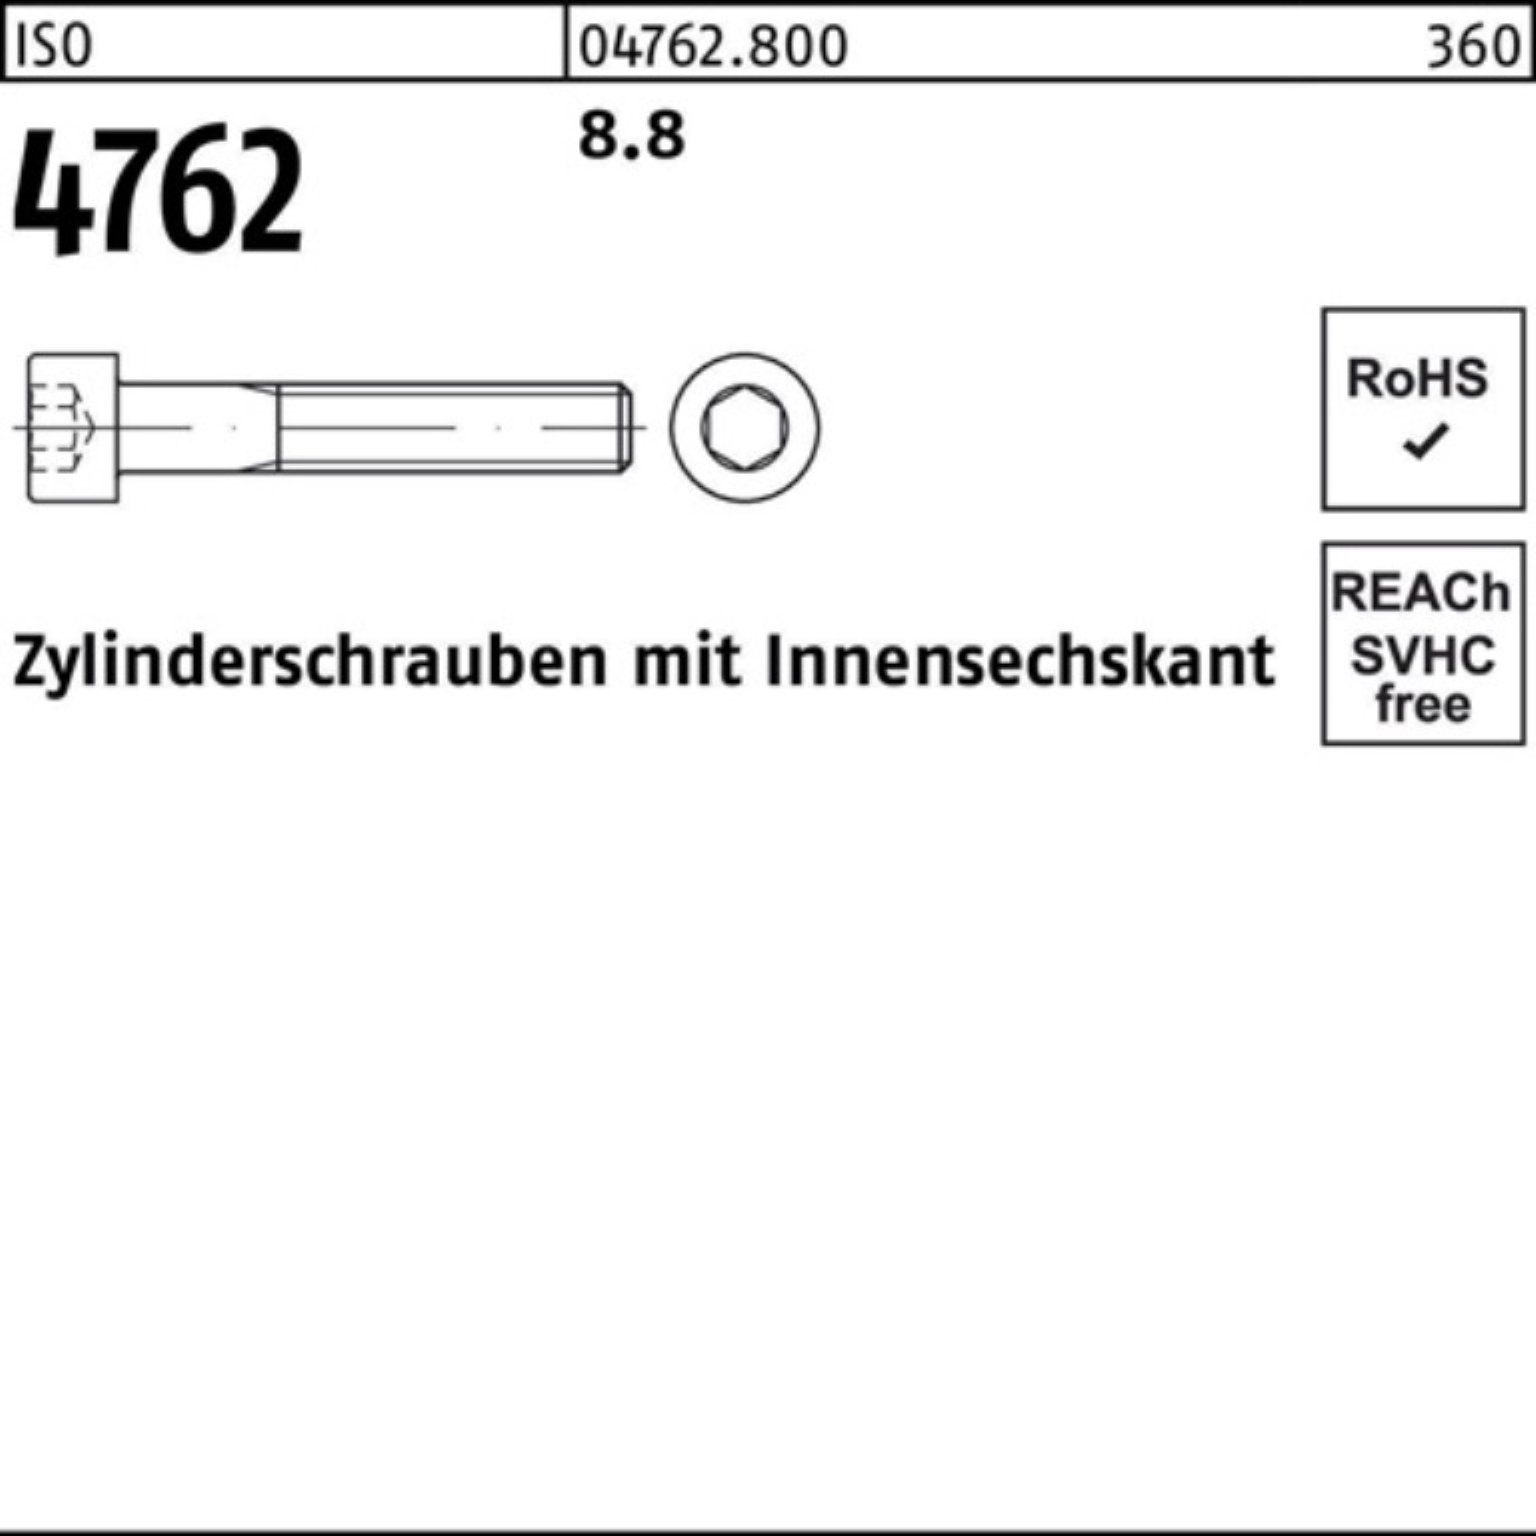 Zylinderschraube 440 Reyher Innen-6kt 4762 ISO 100er Stück Zylinderschraube 8.8 M24x I 1 Pack